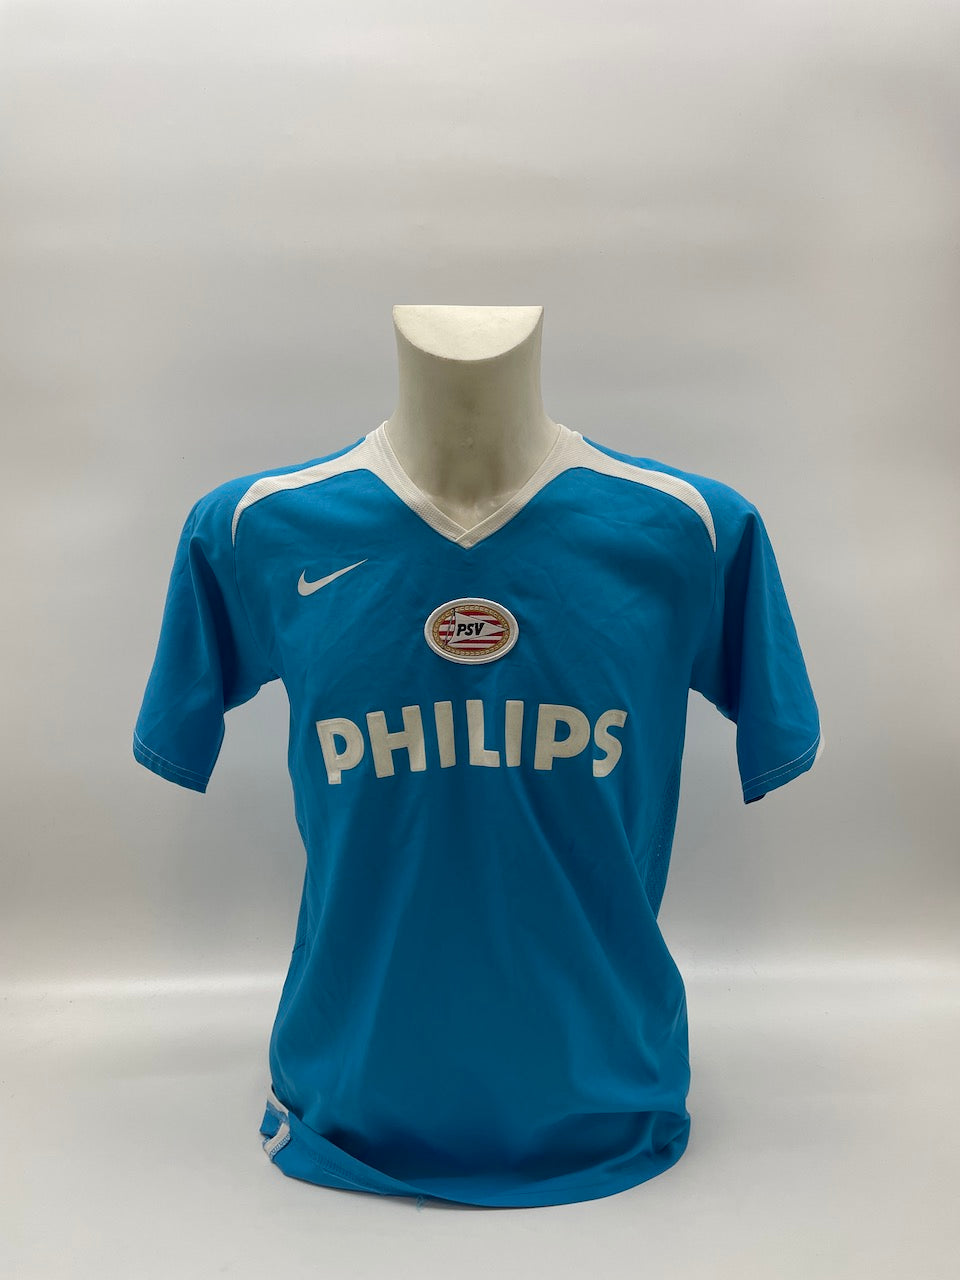 PSV Eindhoven Trikot Afellay signiert Autogramm Adidas COA Niederlande 158-170